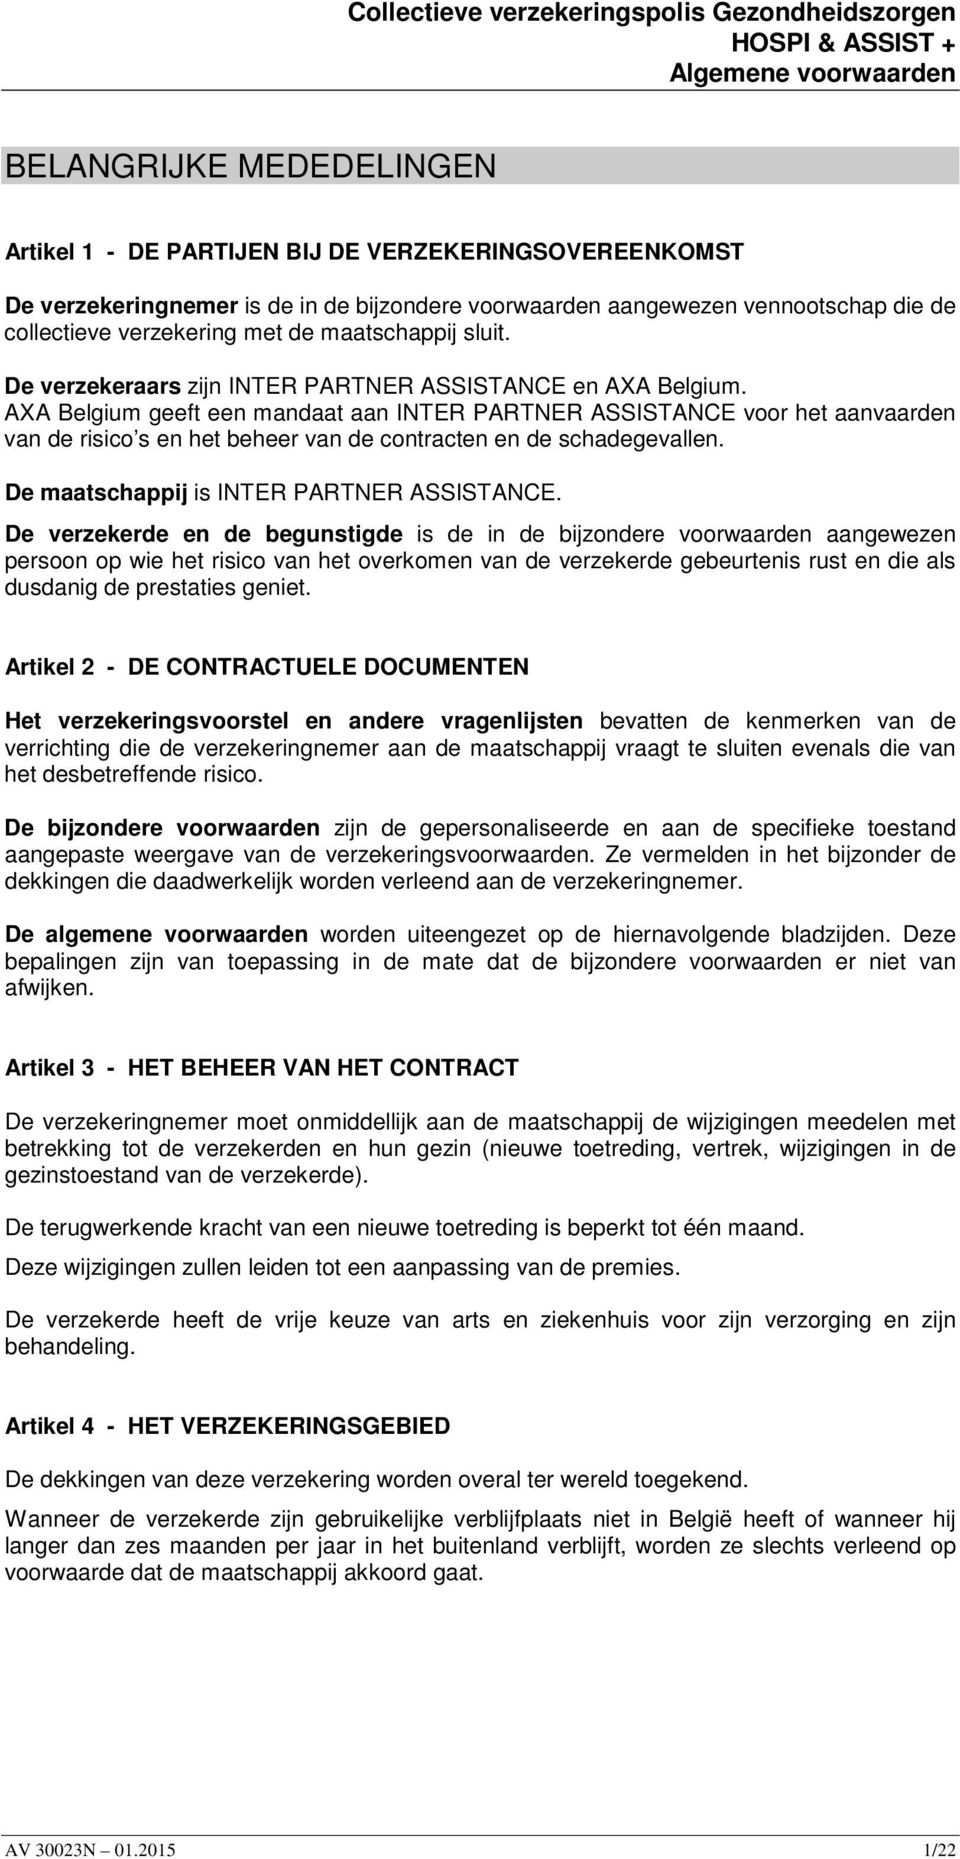 AXA Belgium geeft een mandaat aan INTER PARTNER ASSISTANCE voor het aanvaarden van de risico s en het beheer van de contracten en de schadegevallen. De maatschappij is INTER PARTNER ASSISTANCE.